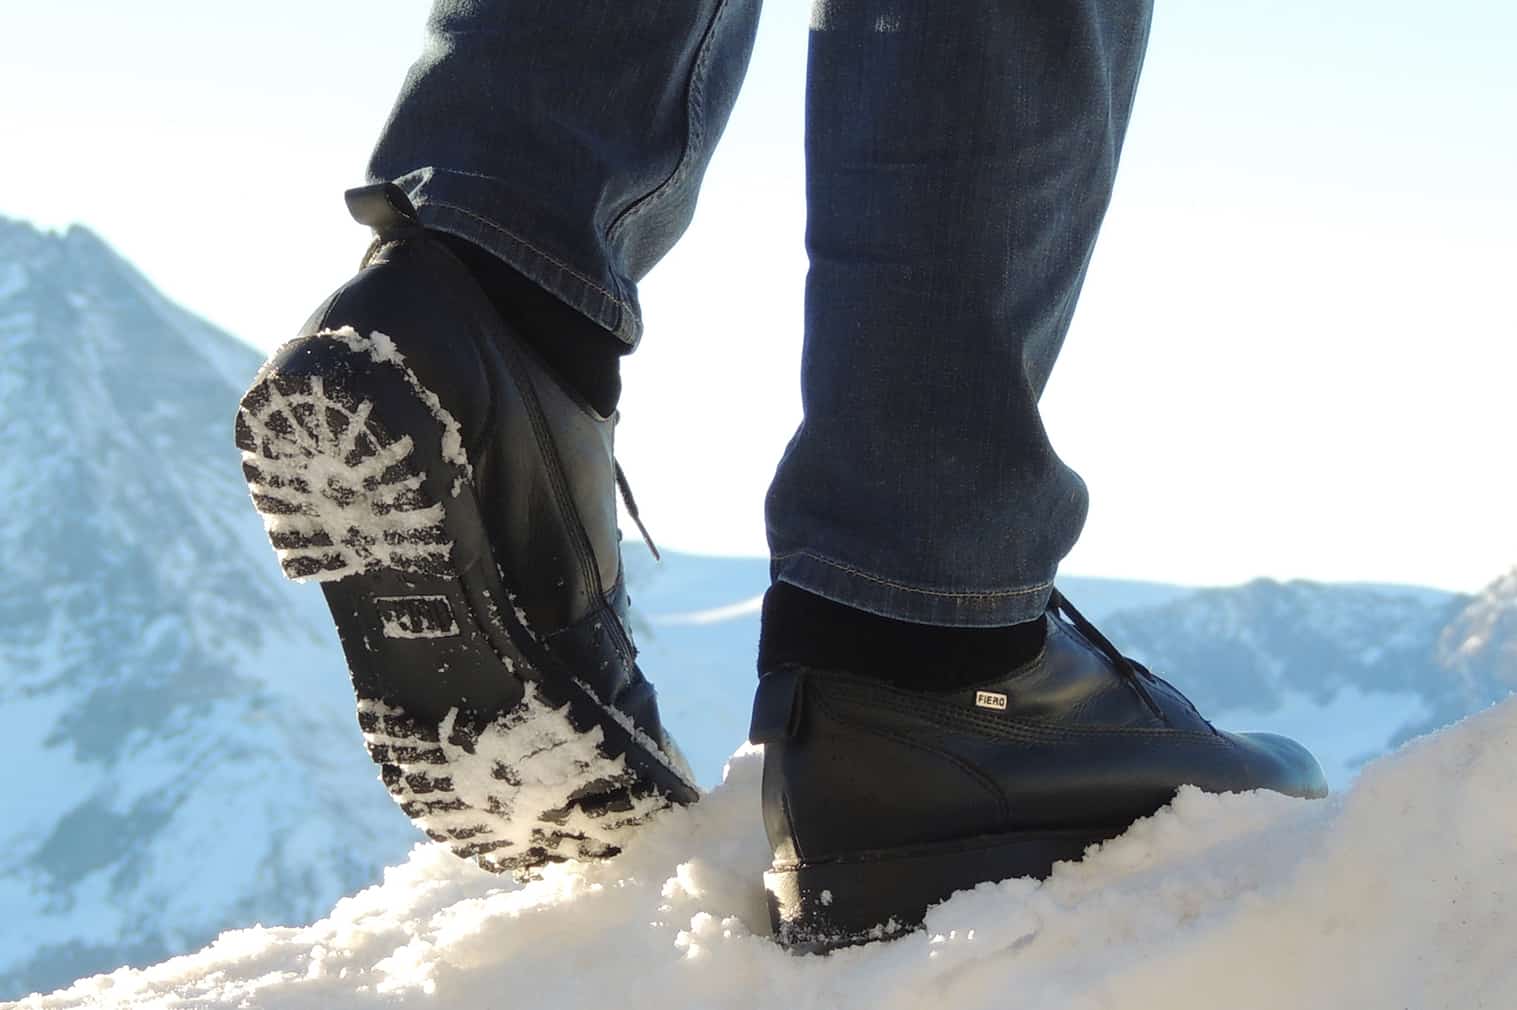 Conjugate Put together Treason Tipos de botas: conheça os modelos que mais aquecem no inverno